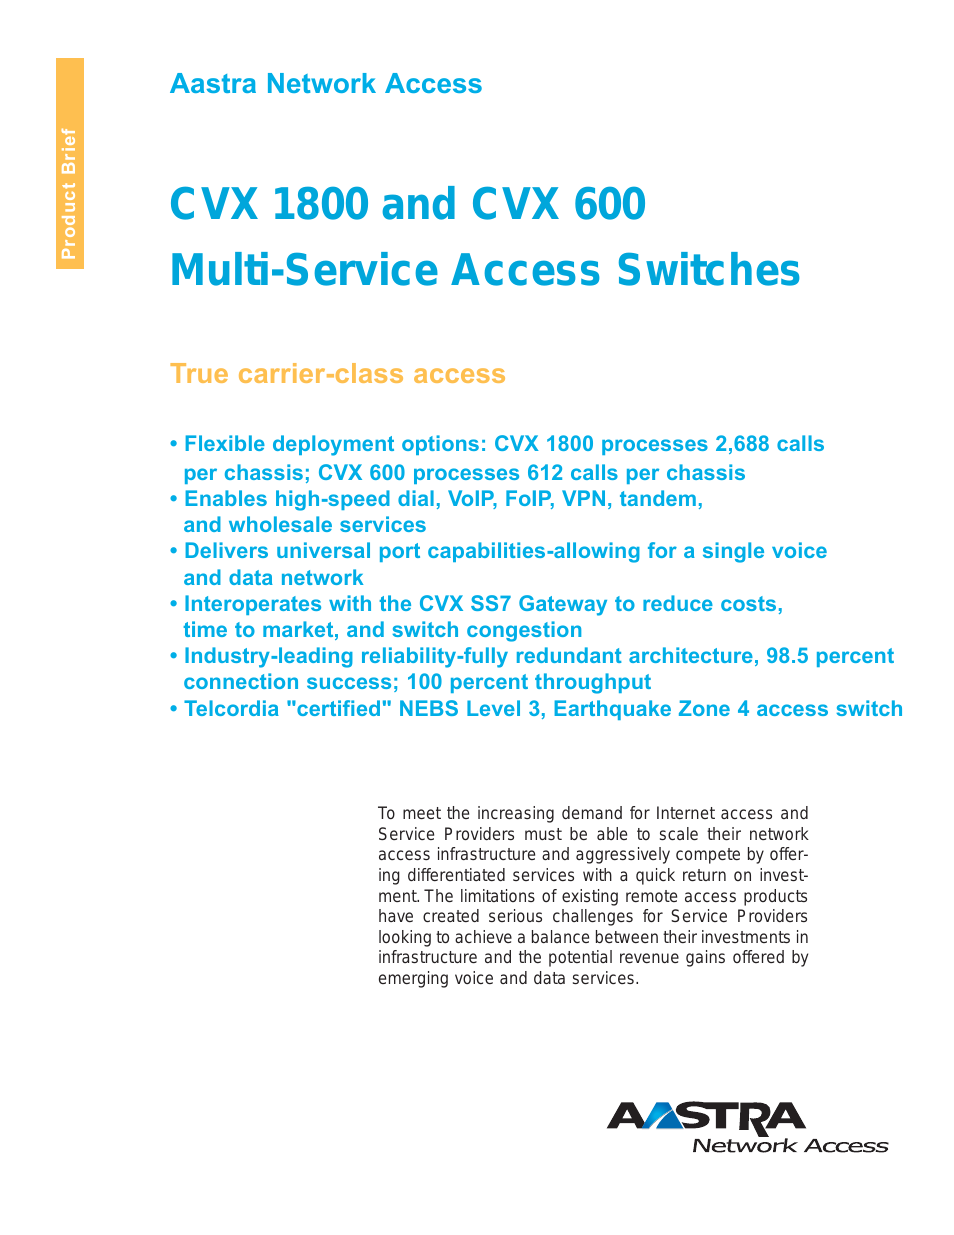 CVX 600